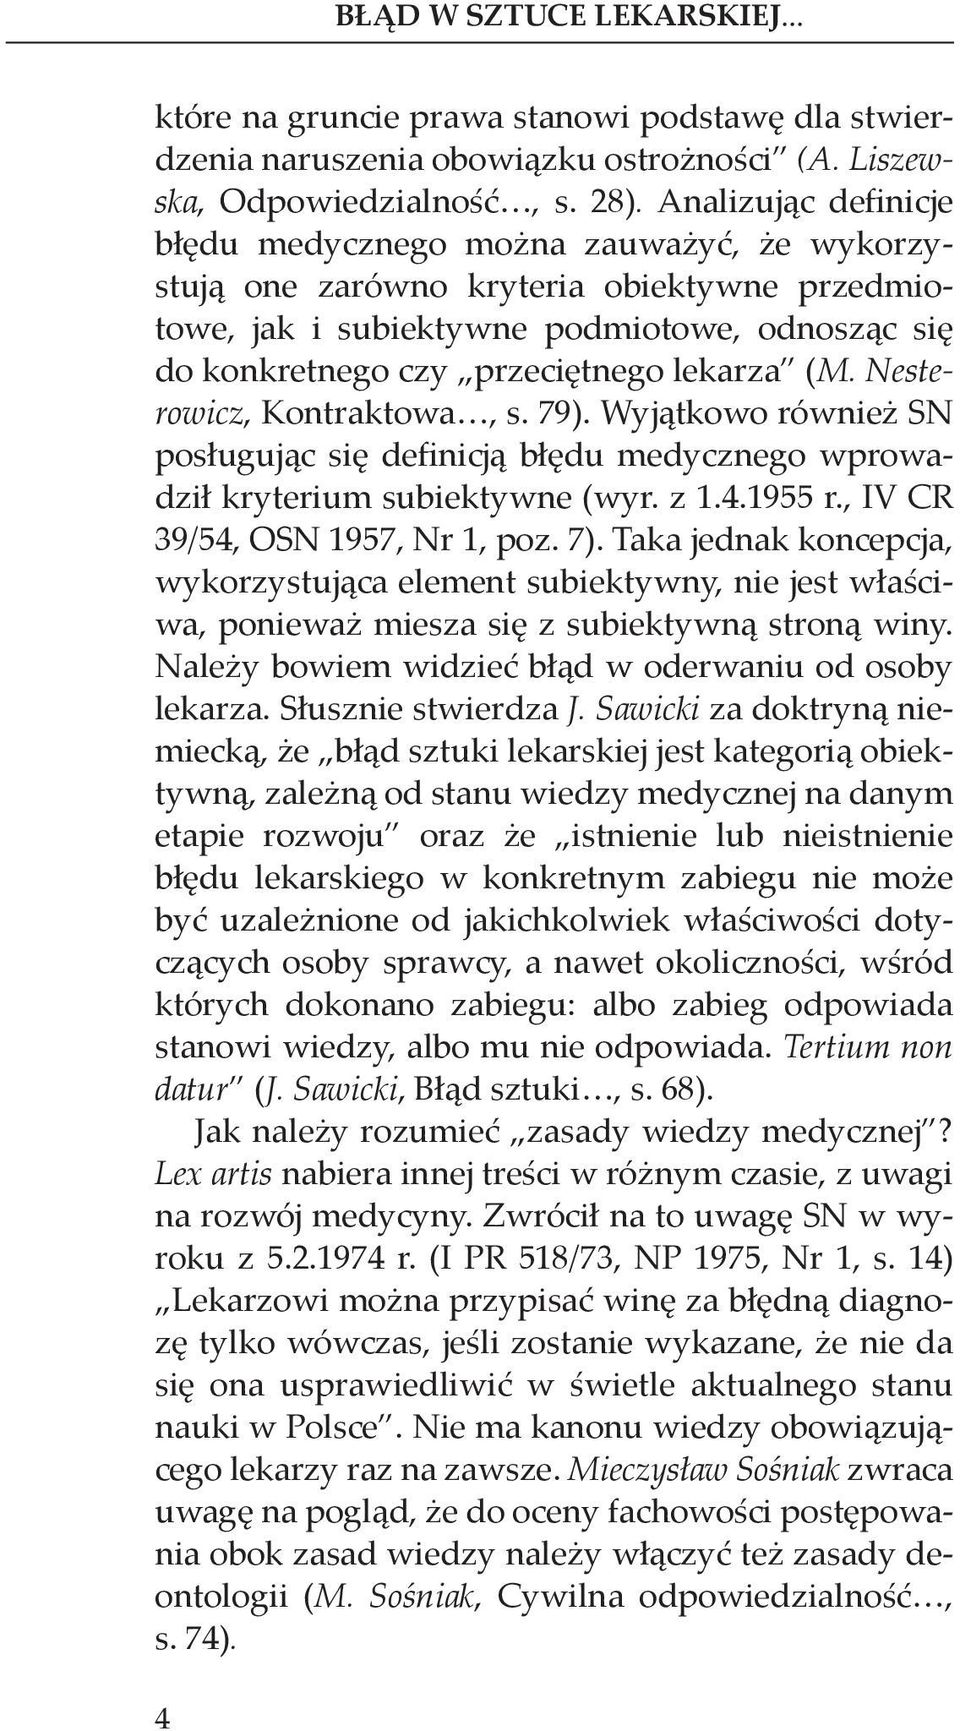 (M. Nesterowicz, Kontraktowa, s. 79). Wyjątkowo również SN posługując się definicją błędu medycznego wprowadził kryterium subiektywne (wyr. z 1.4.1955 r., IV CR 39/54, OSN 1957, Nr 1, poz. 7).